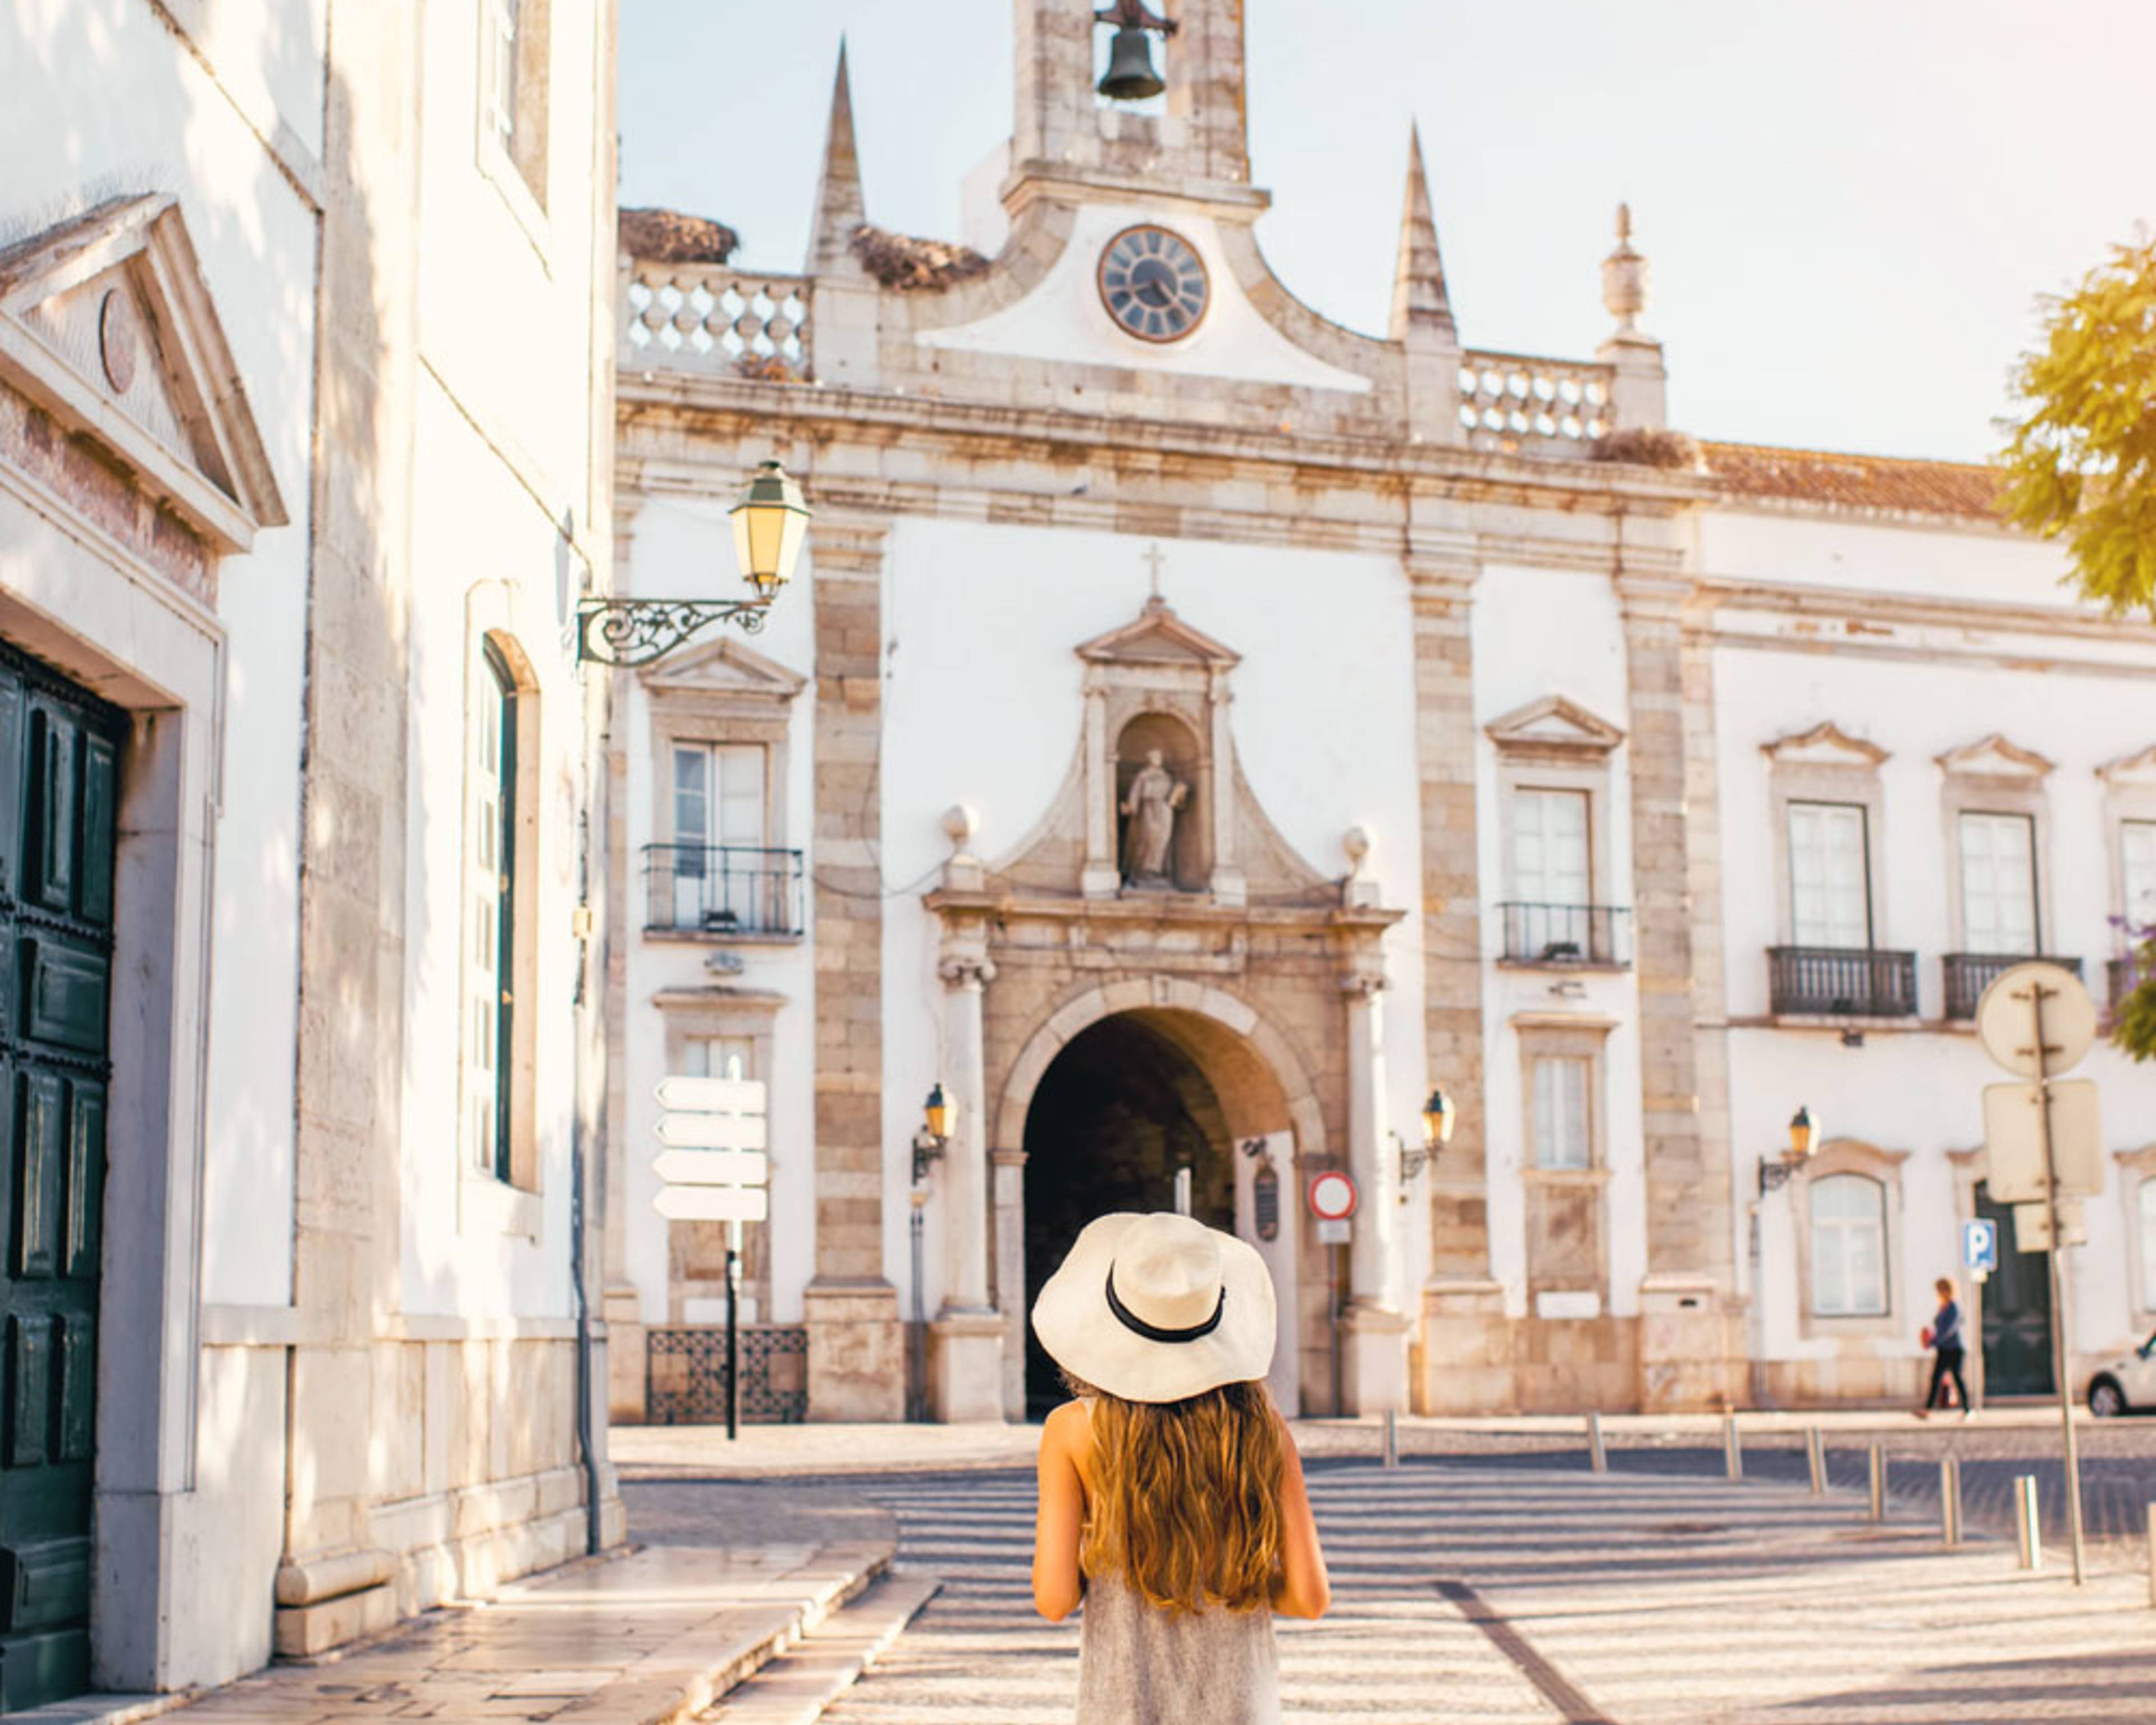 Votre voyage d'une semaine au Portugal 100% sur mesure